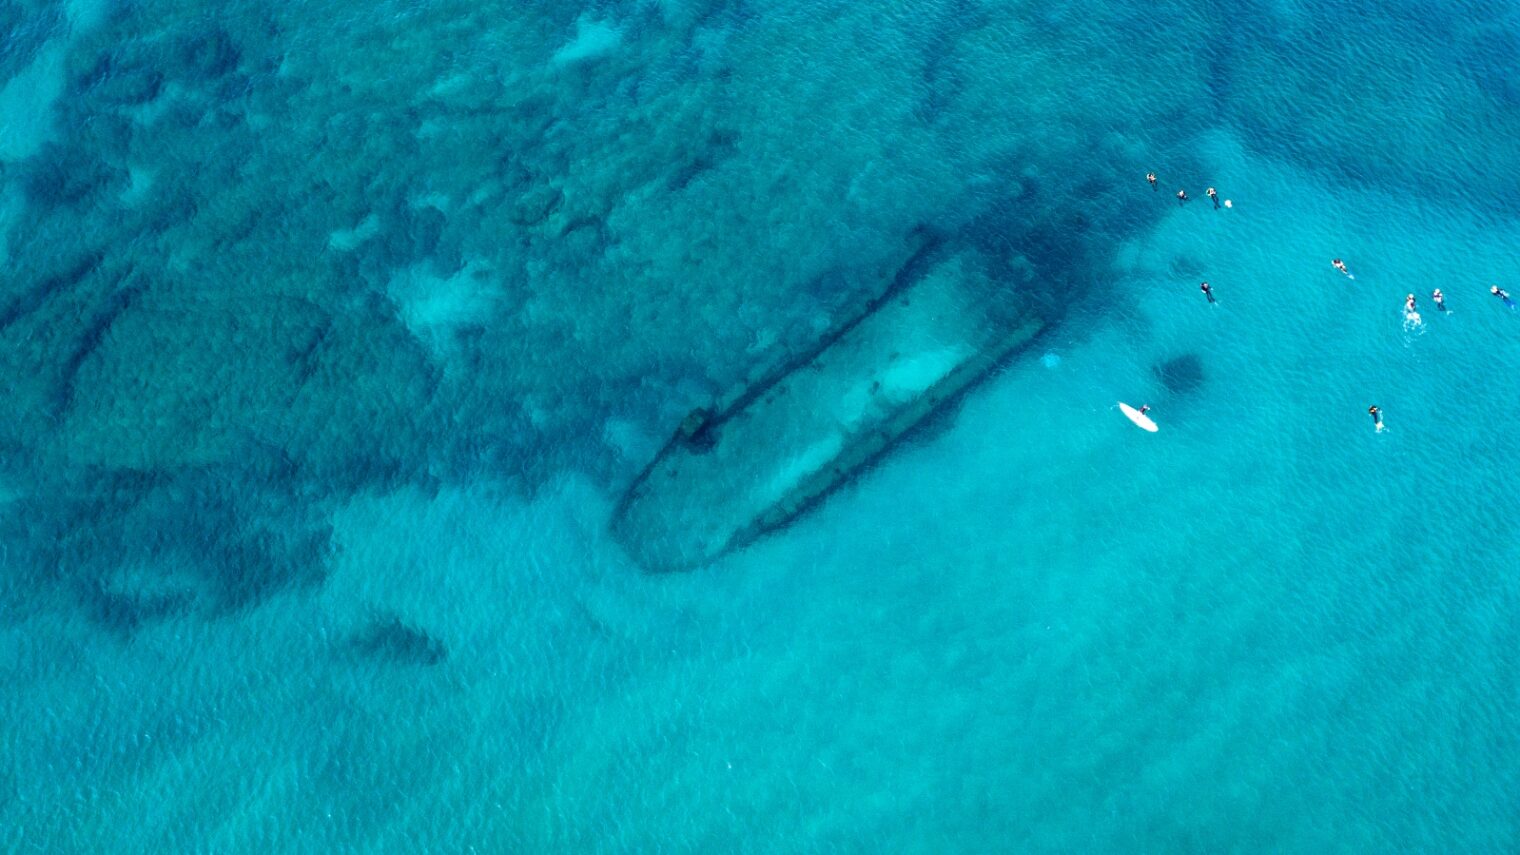 Underwater wreck in Palmachim. Photo by Eli Passi